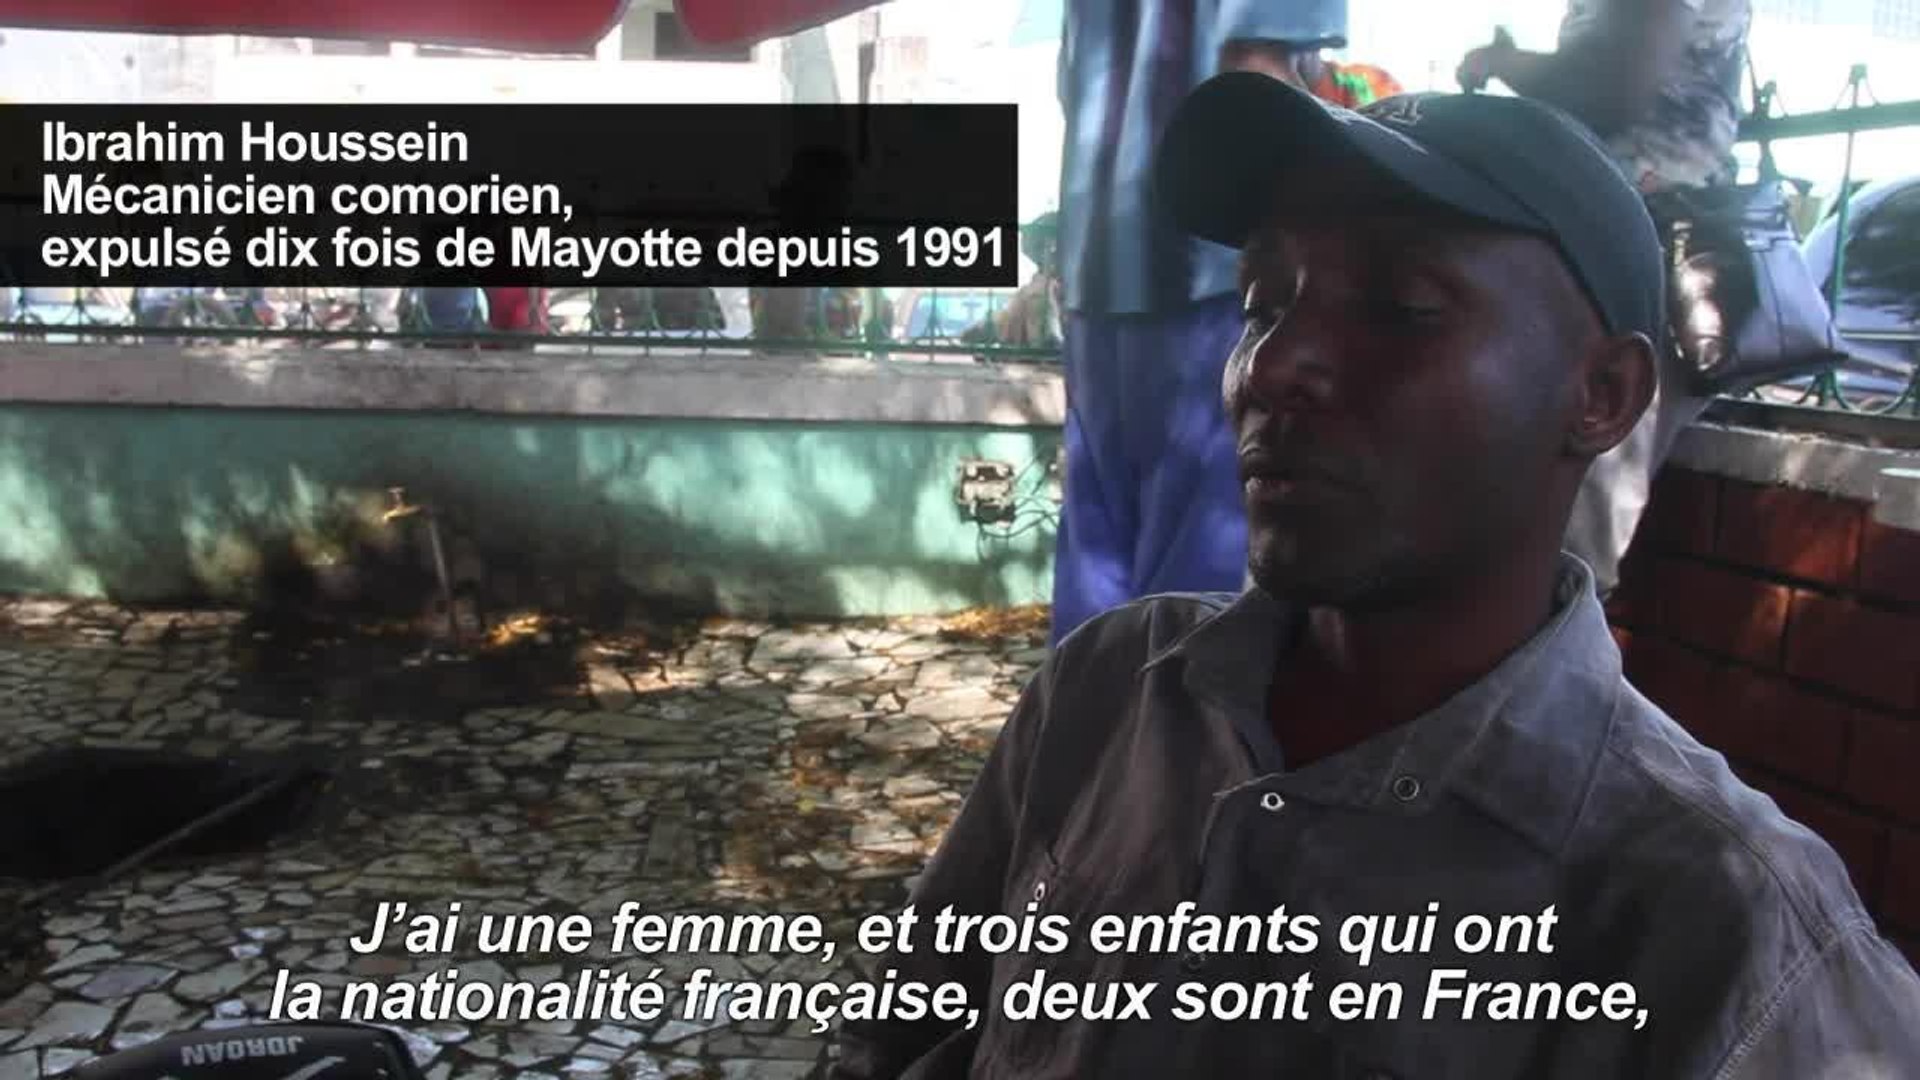 Les Comores refusent d'accueillir les expulsés de Mayotte - Vidéo  Dailymotion